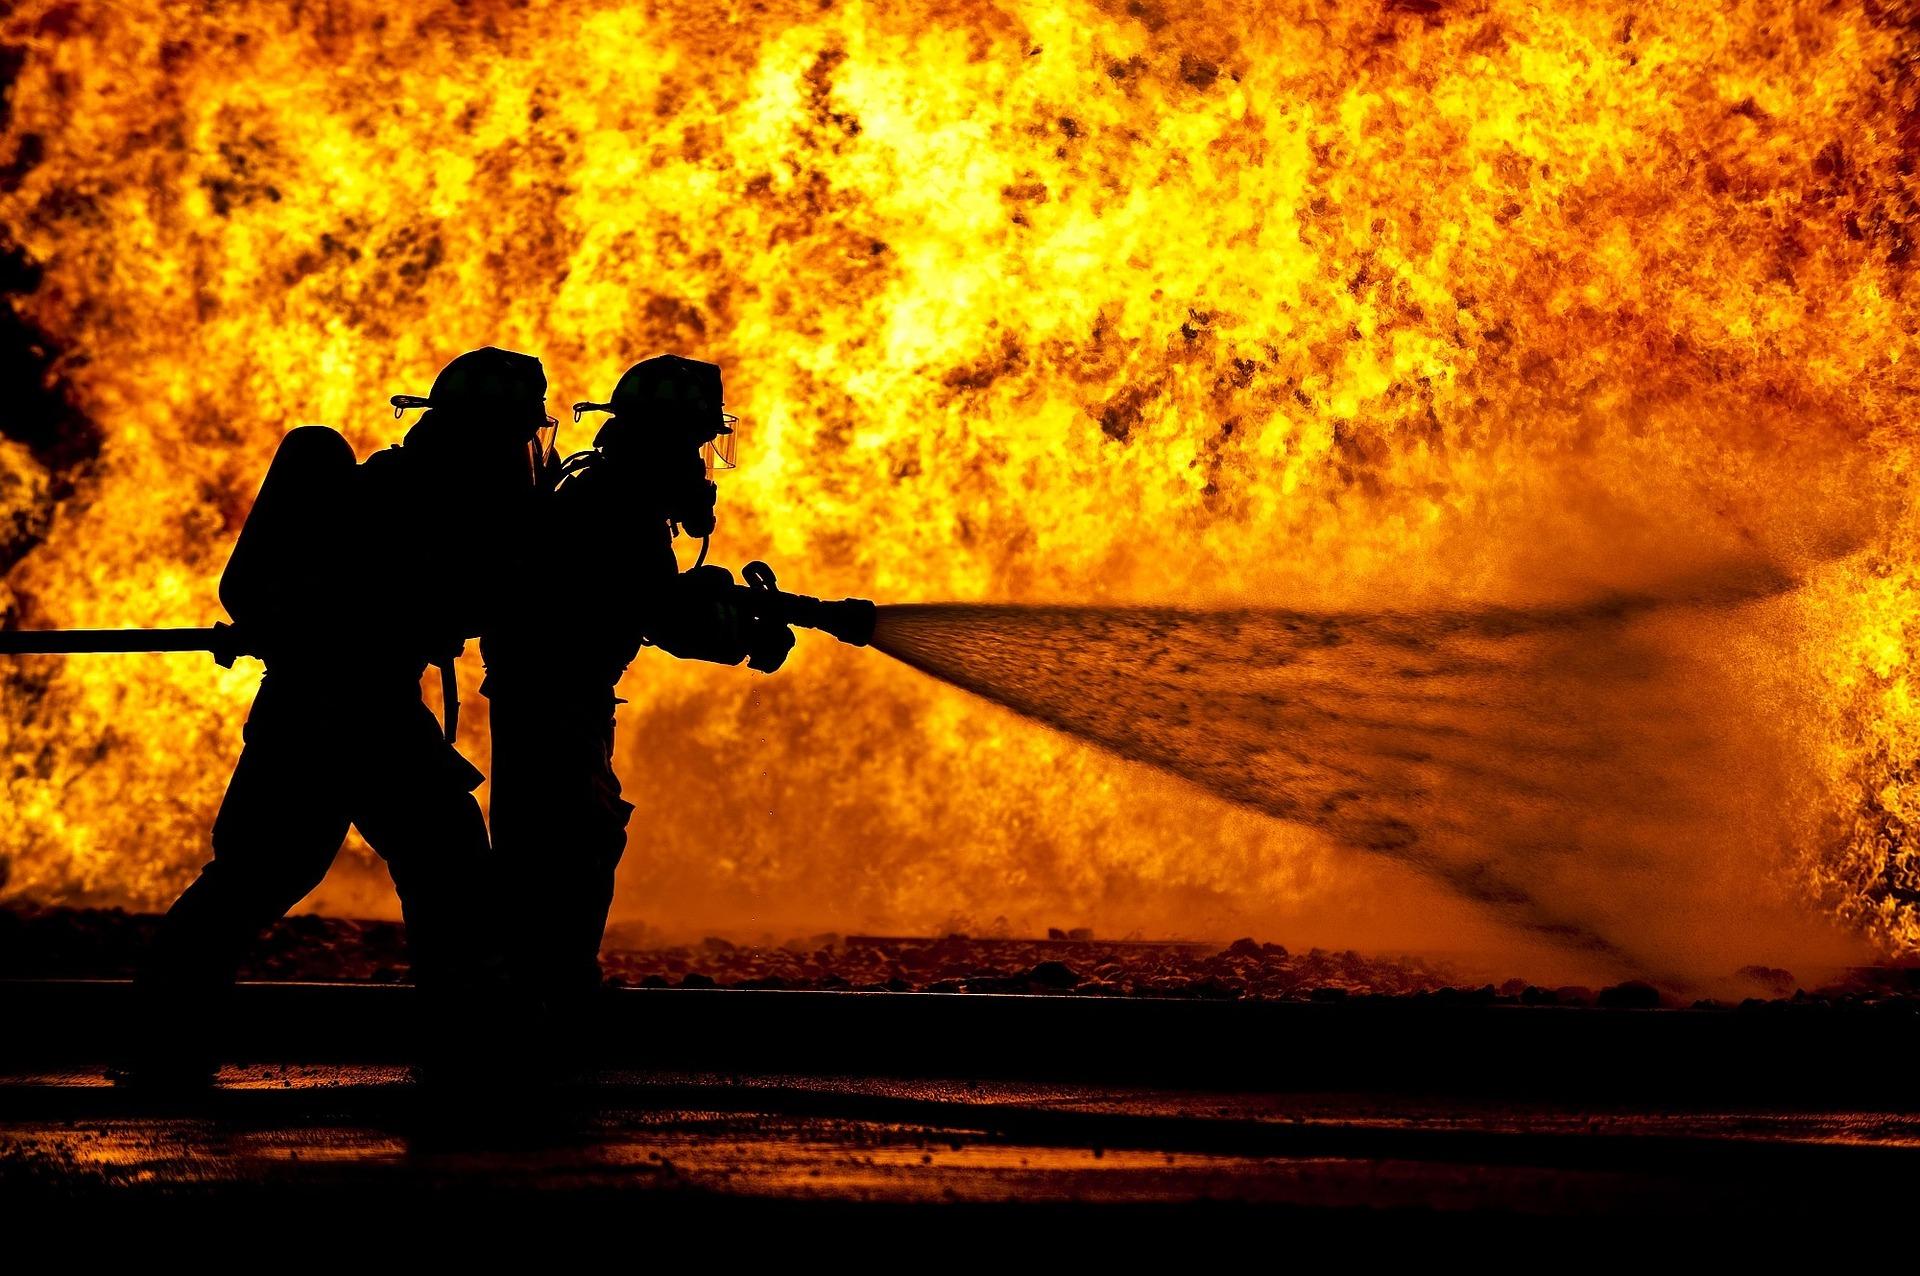 Dos bomberos luchan contra el fuego. Fuente: Pixabay.